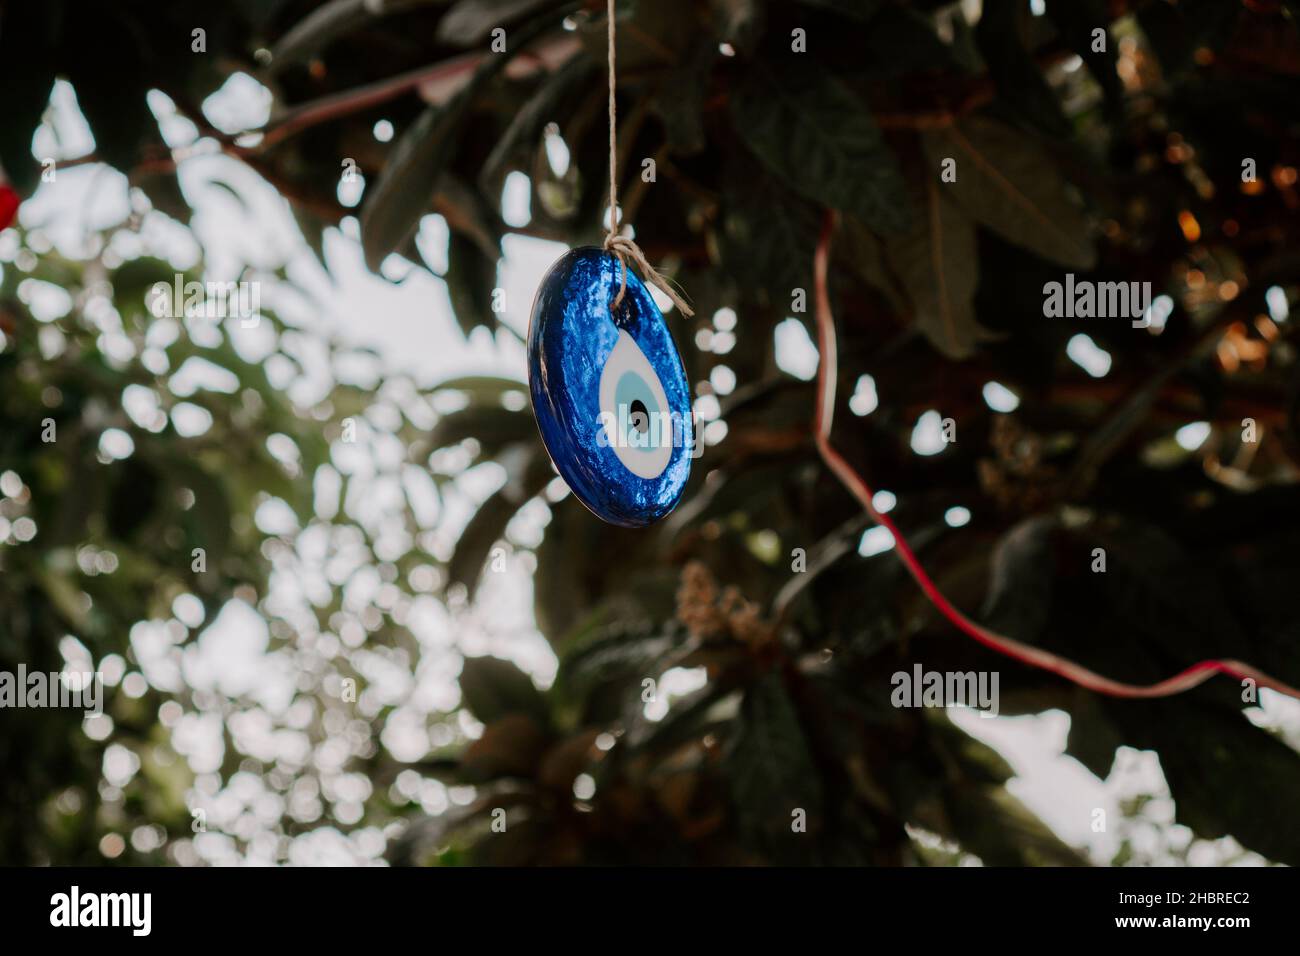 Amulette turque traditionnelle Nazar, oeil de mal turc, amulette en forme d'oeil turc Nazar boncugu.turc accrochée à un arbre.Turquie Banque D'Images